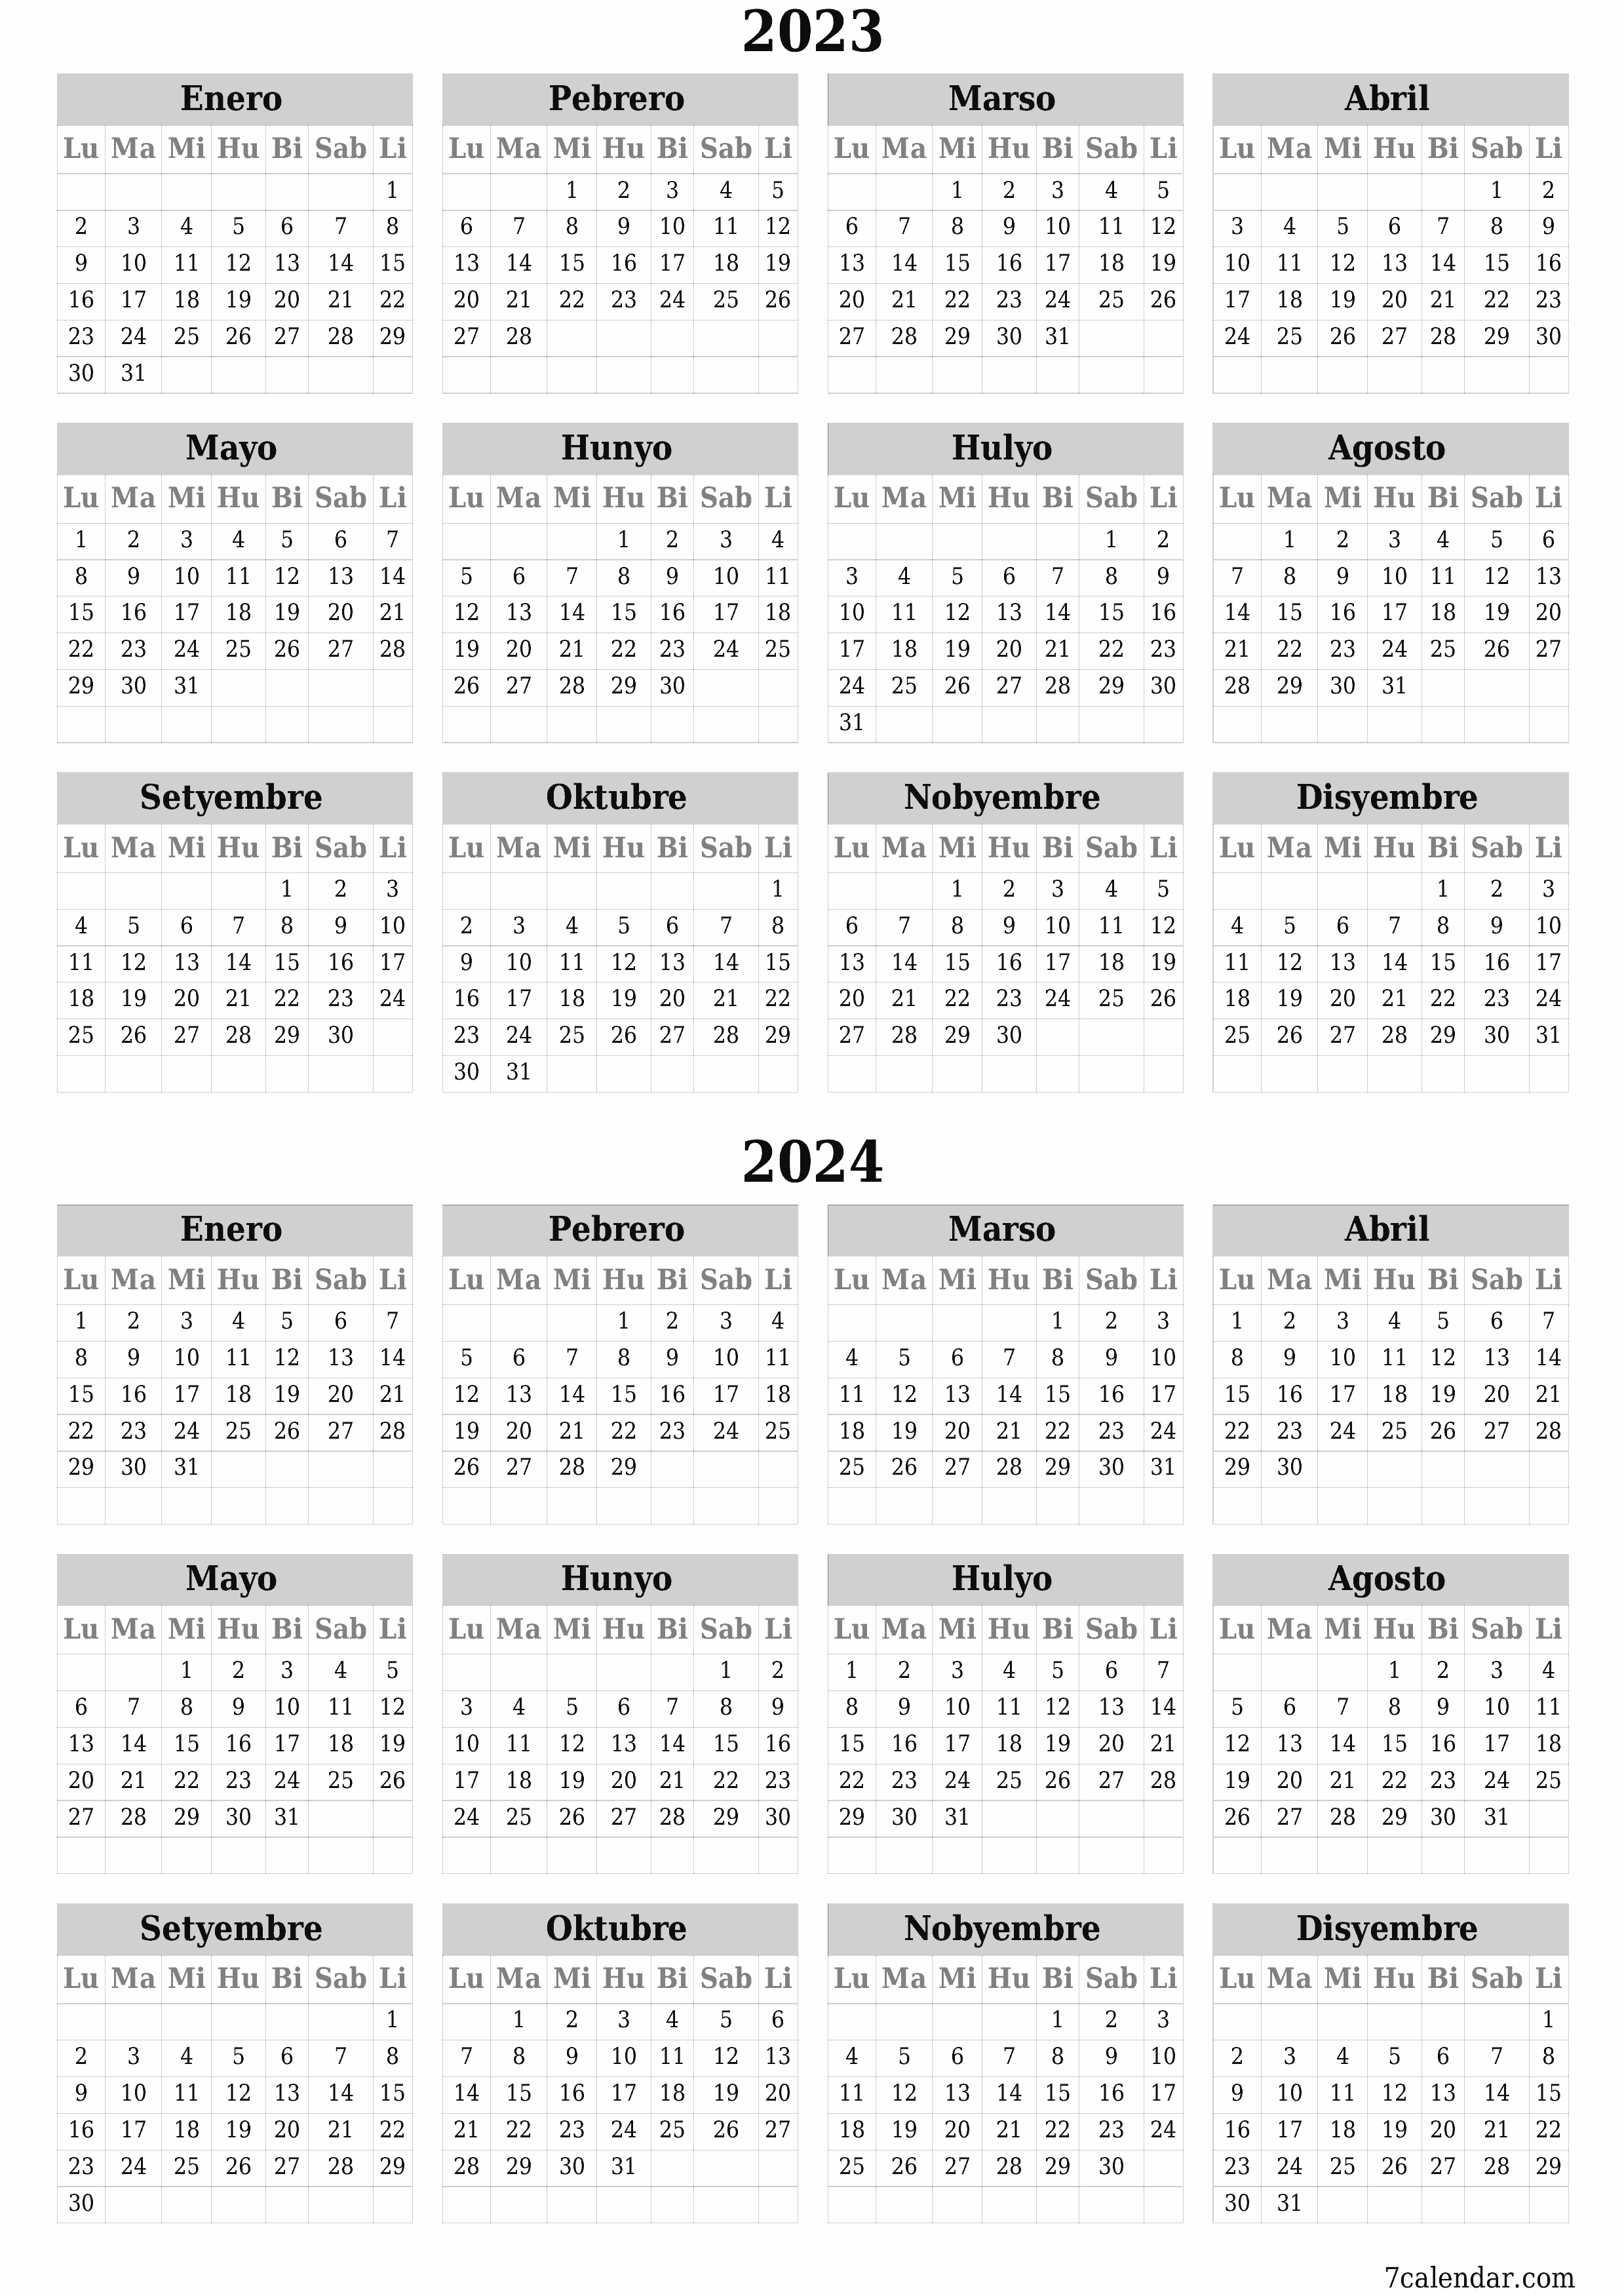 napi-print na sa dingding template ng libreng patayo Taunan kalendaryo Marso (Mar) 2023